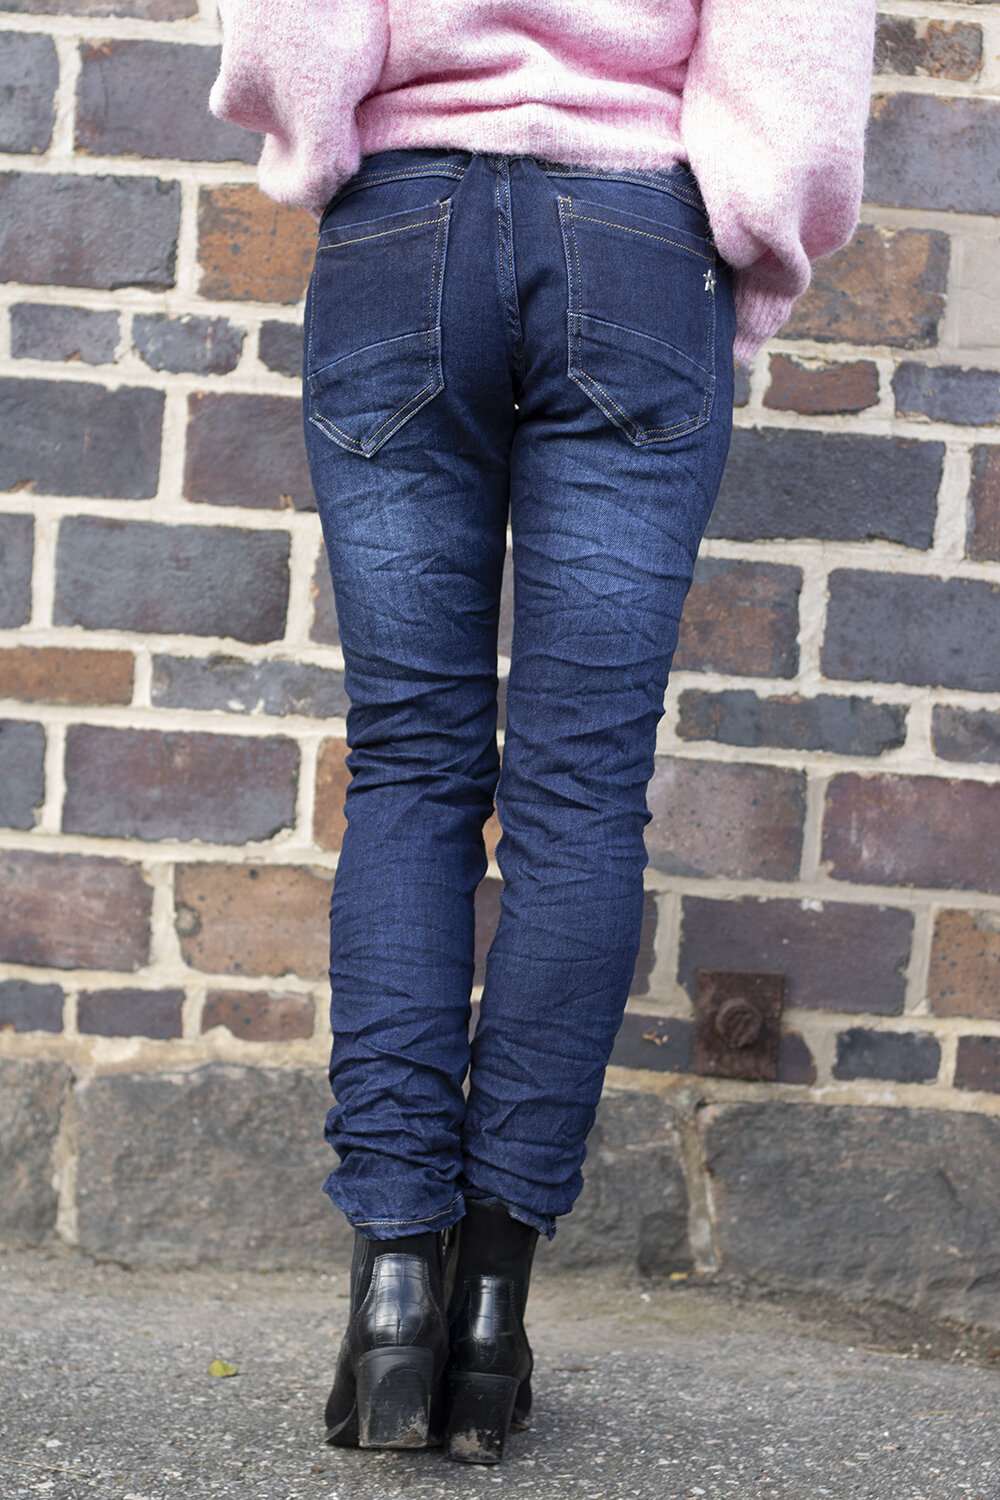 Jeans JW2526 - Bling & Pärlknappar - Mörktvätt